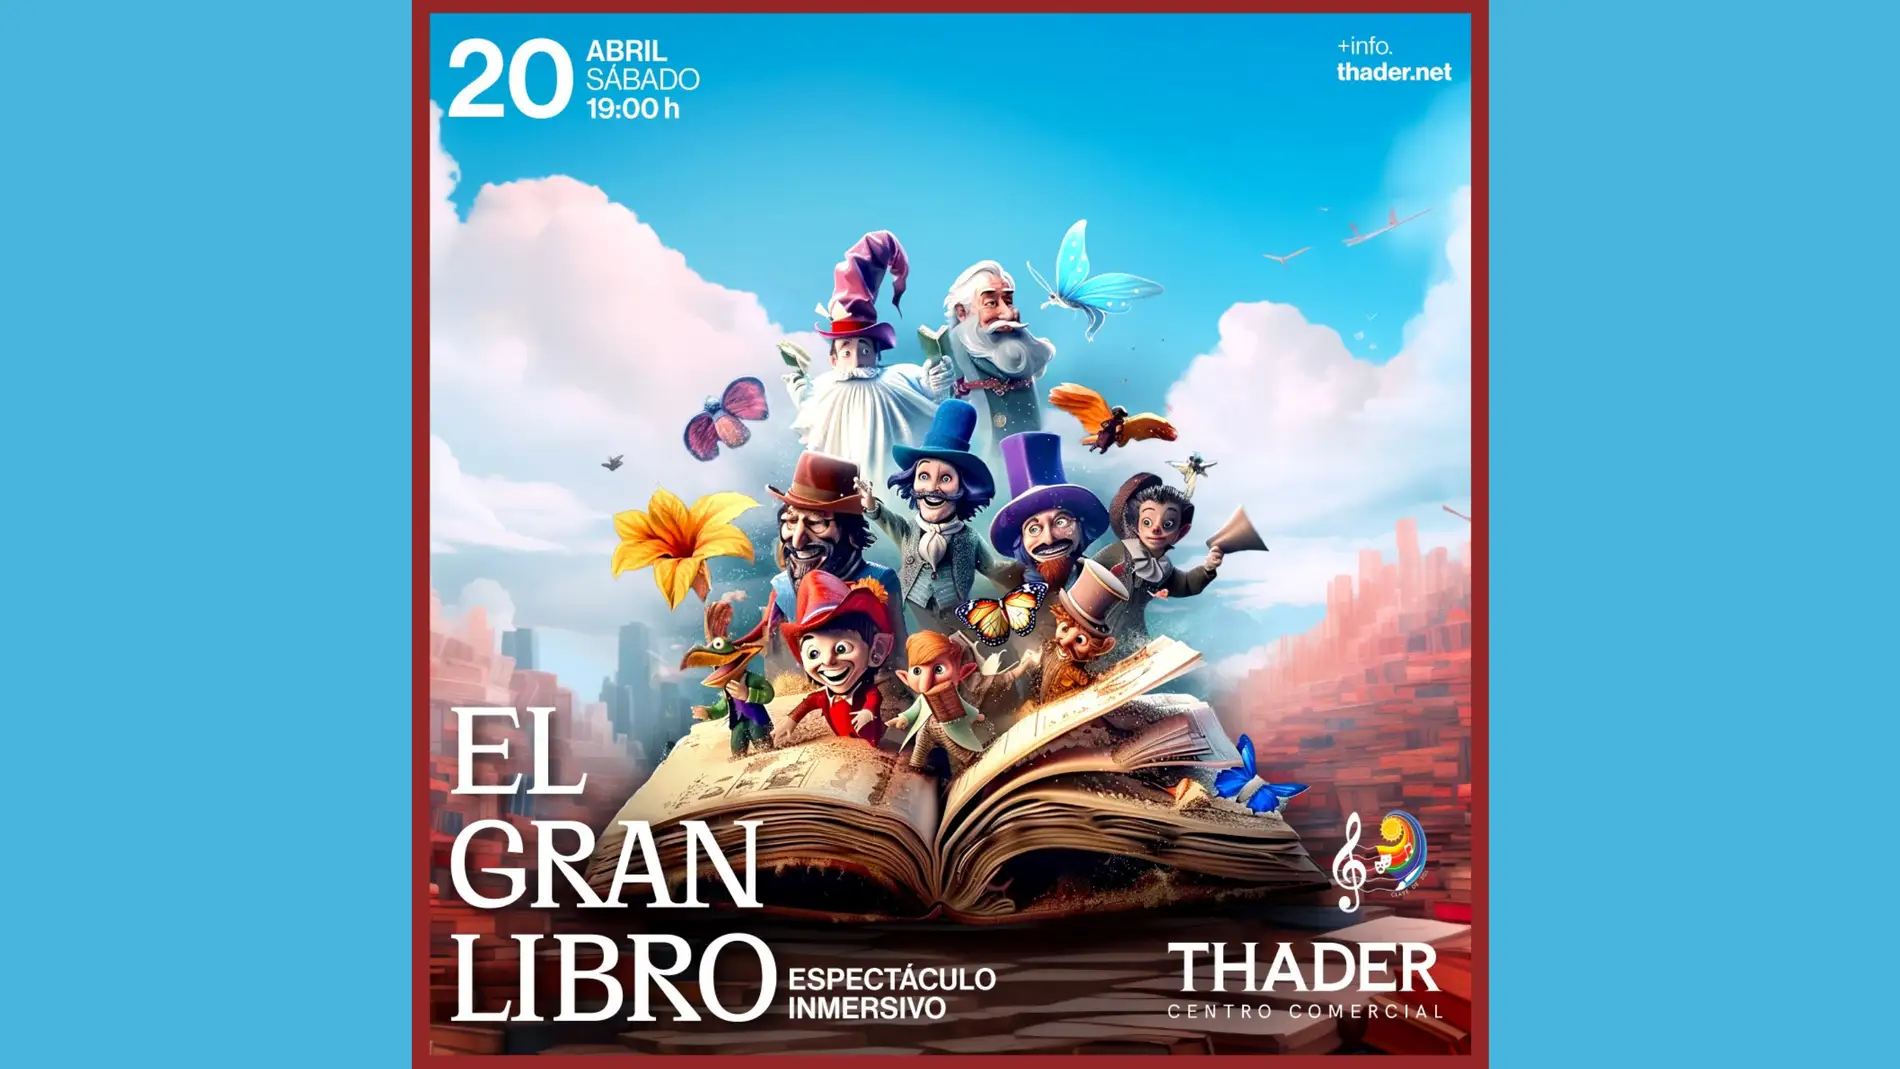 Thader celebra el Día del Libro con un espectáculo de teatro inmersivo: 'El Gran Libro'